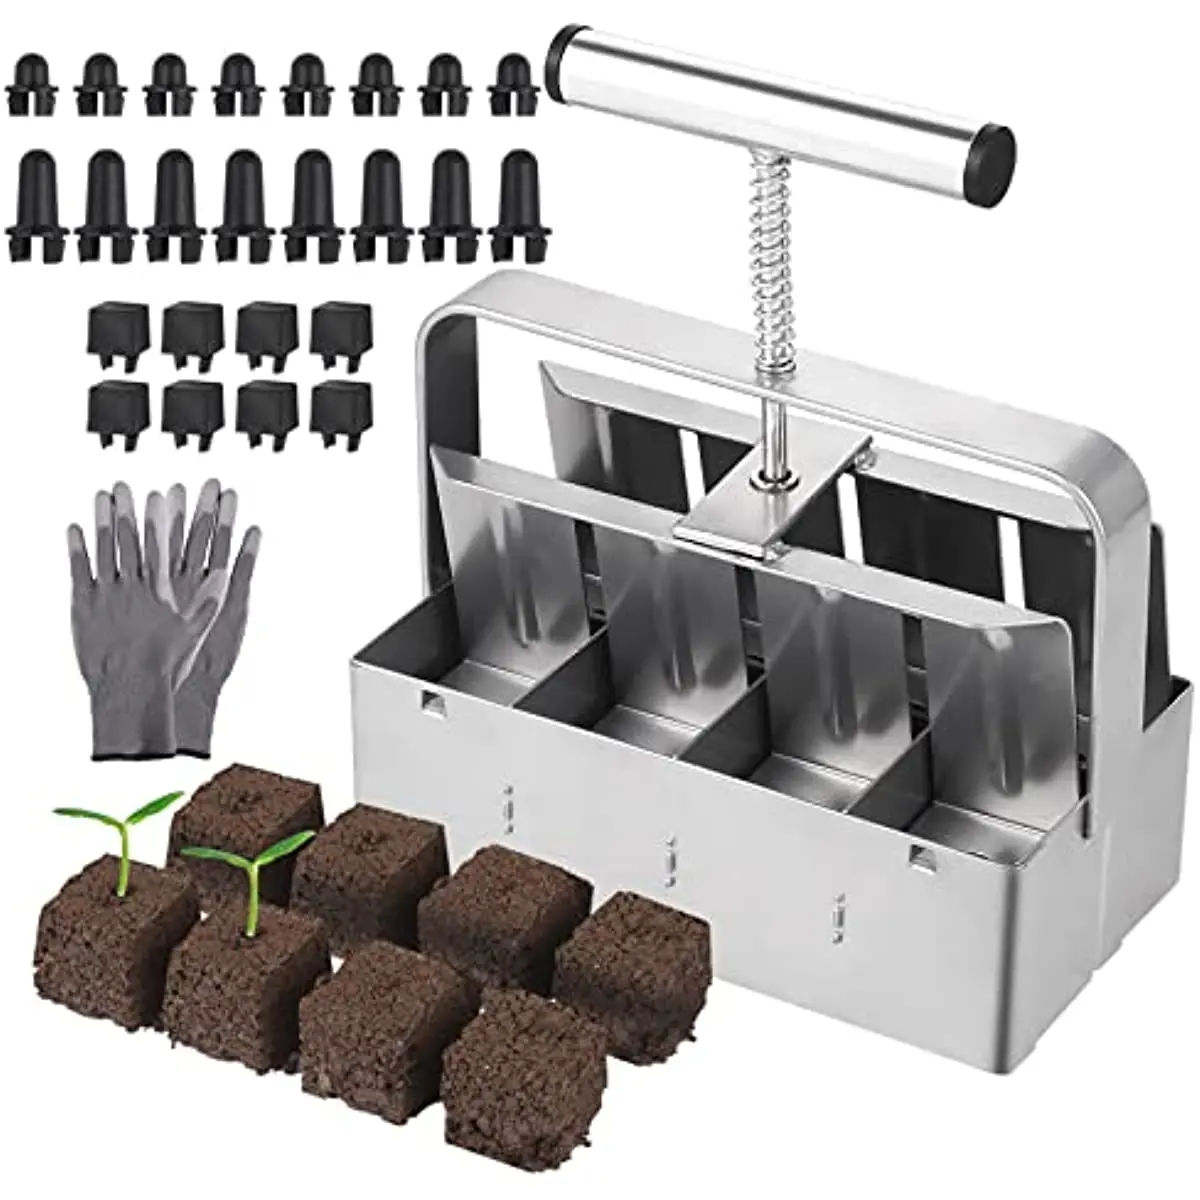 

Устройство для изготовления почвенных блоков, 8 ячеек, ручная работа с садовыми перчатками, 2 дюйма, инструмент для защиты почвы от повреждений при пересадках саженцев